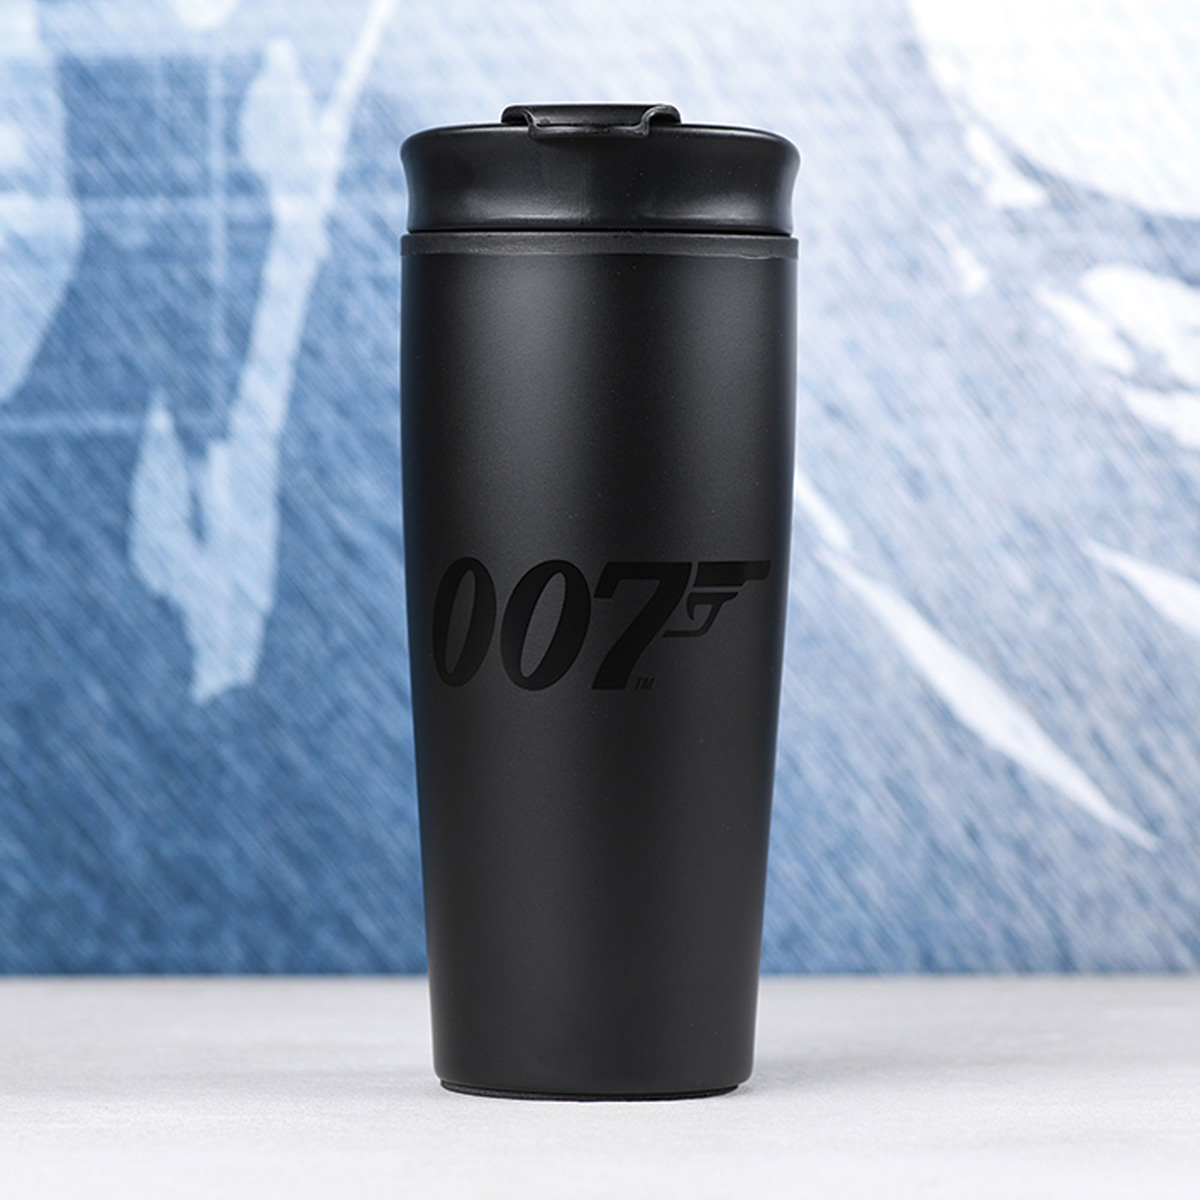 James Bond - Mug 007 Travel